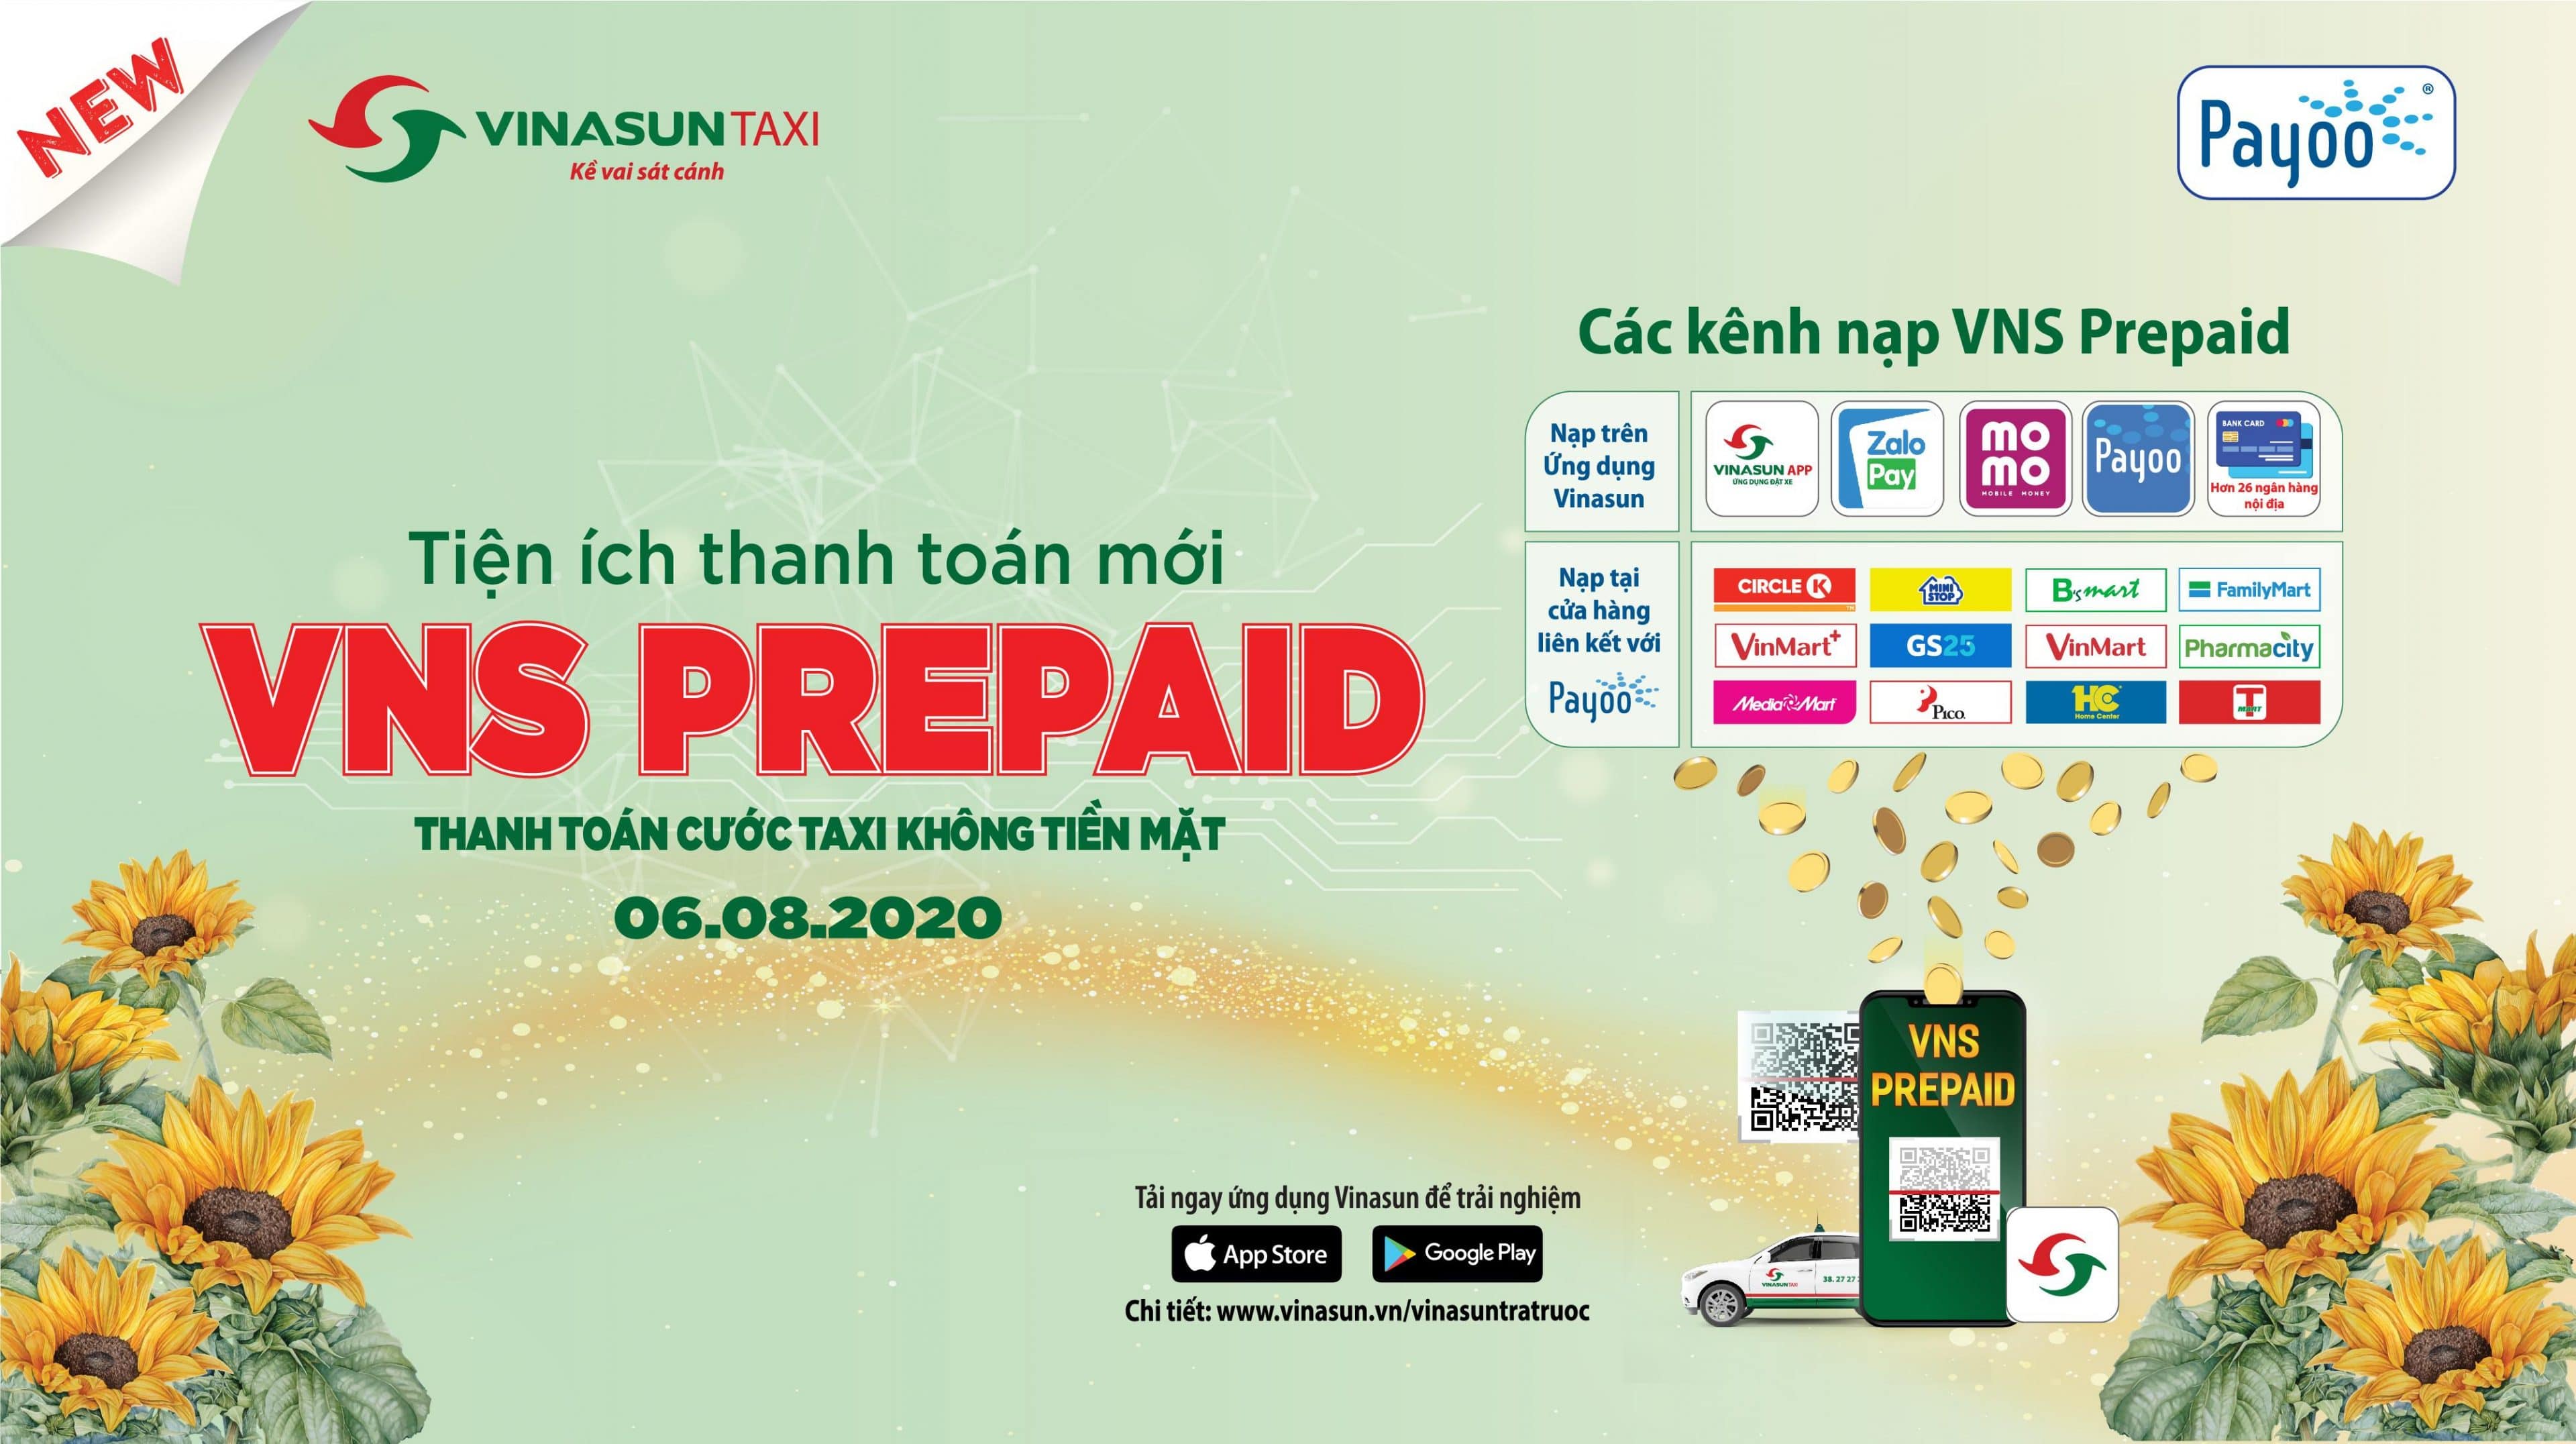 Thanh toán cước taxi không tiền mặt với VNS Prepaid - Vinasun trả trước